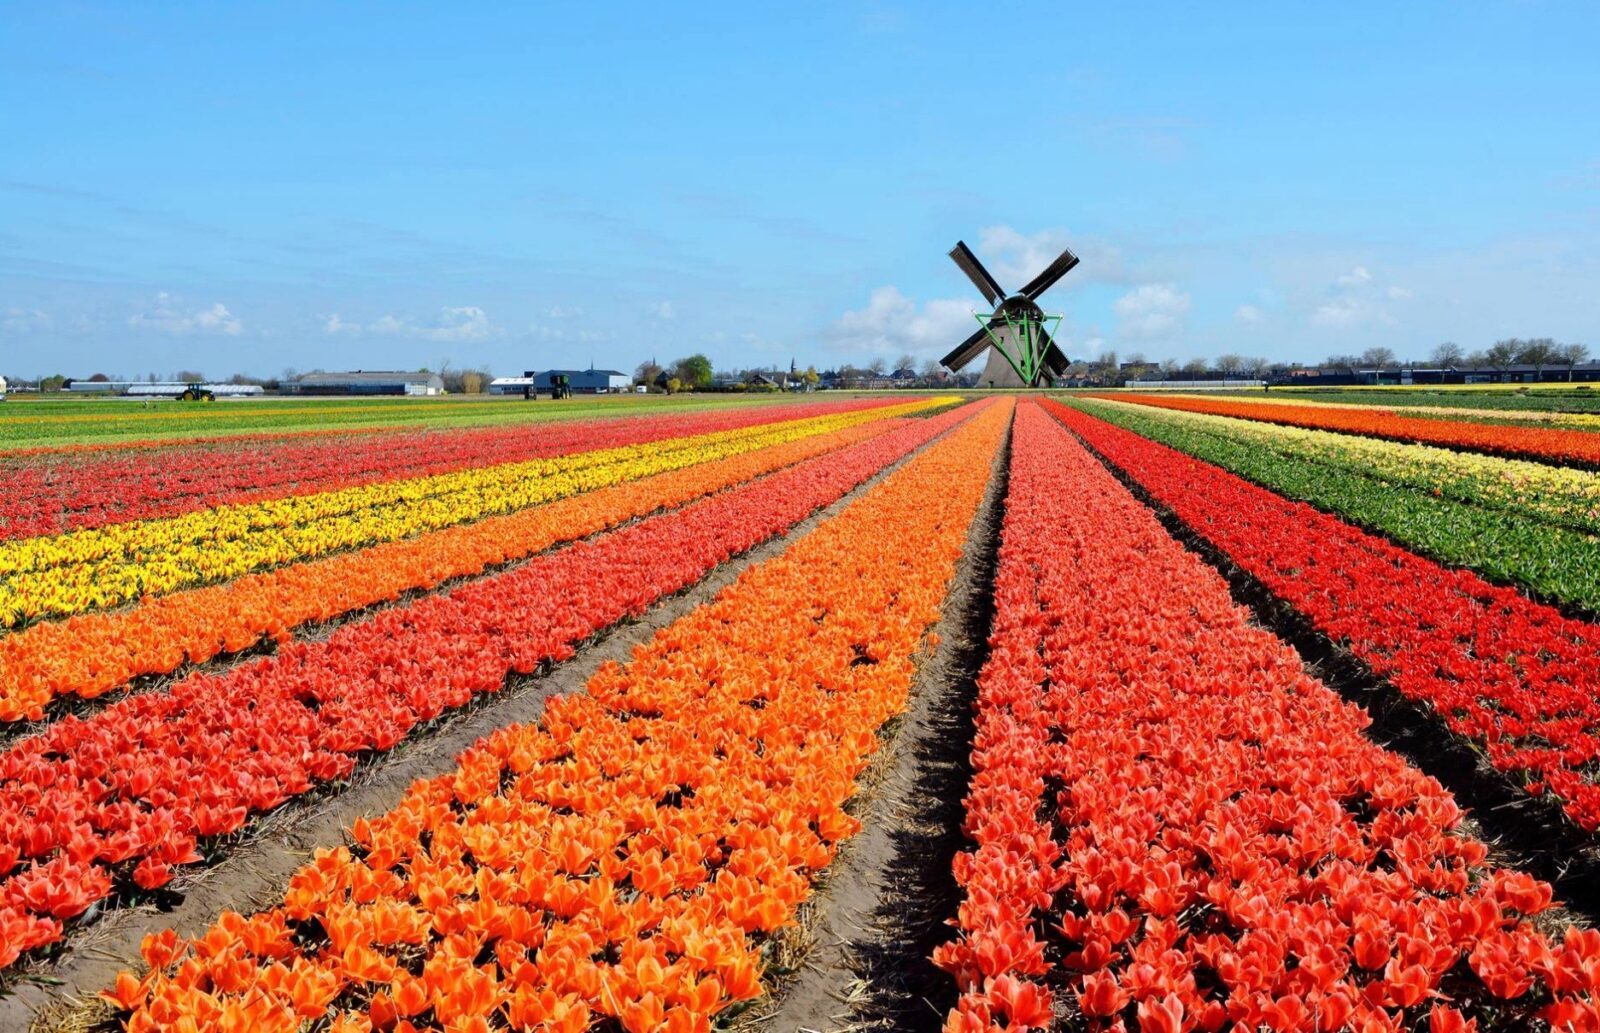 тюльпаны в голландии